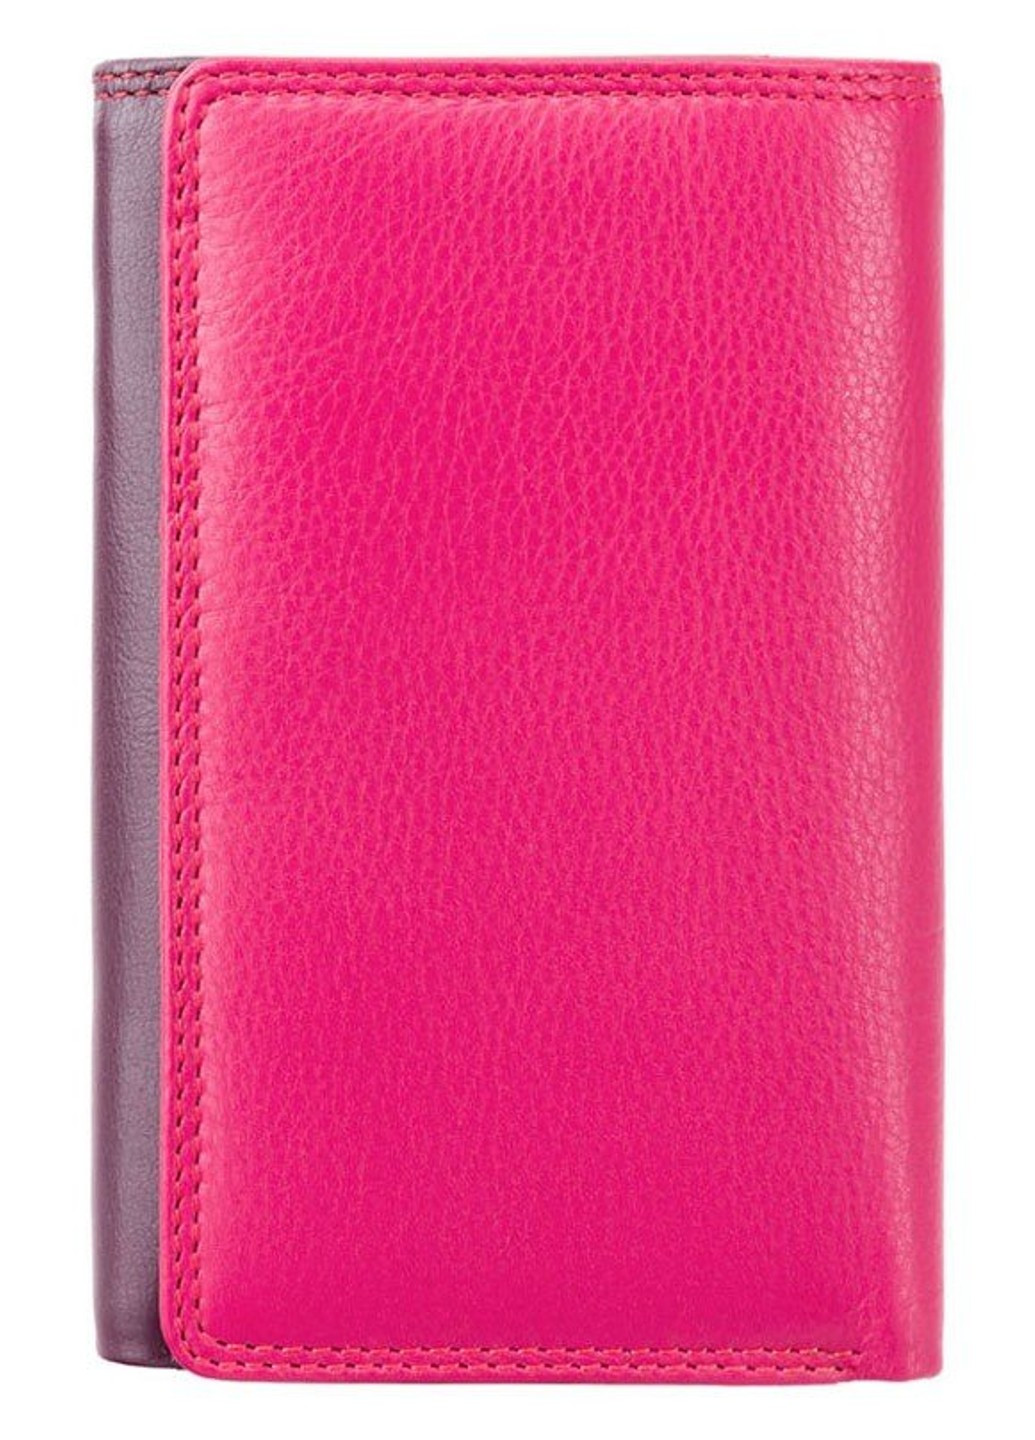 Женский кожаный кошелек BORA rb43 red m Visconti (261851505)